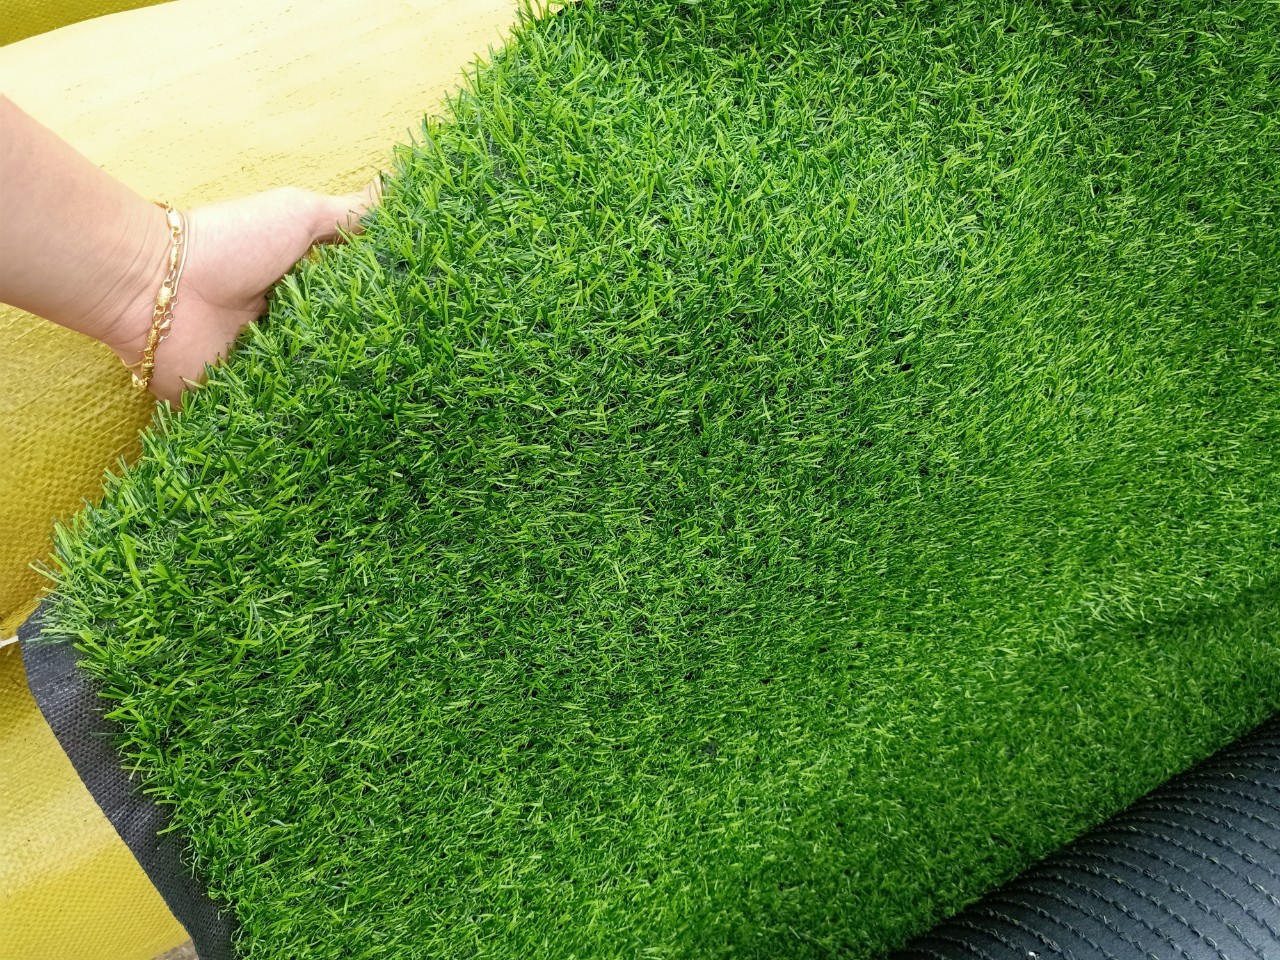 Mua cỏ nhân tạo giá rẻ tại Bắc Giang